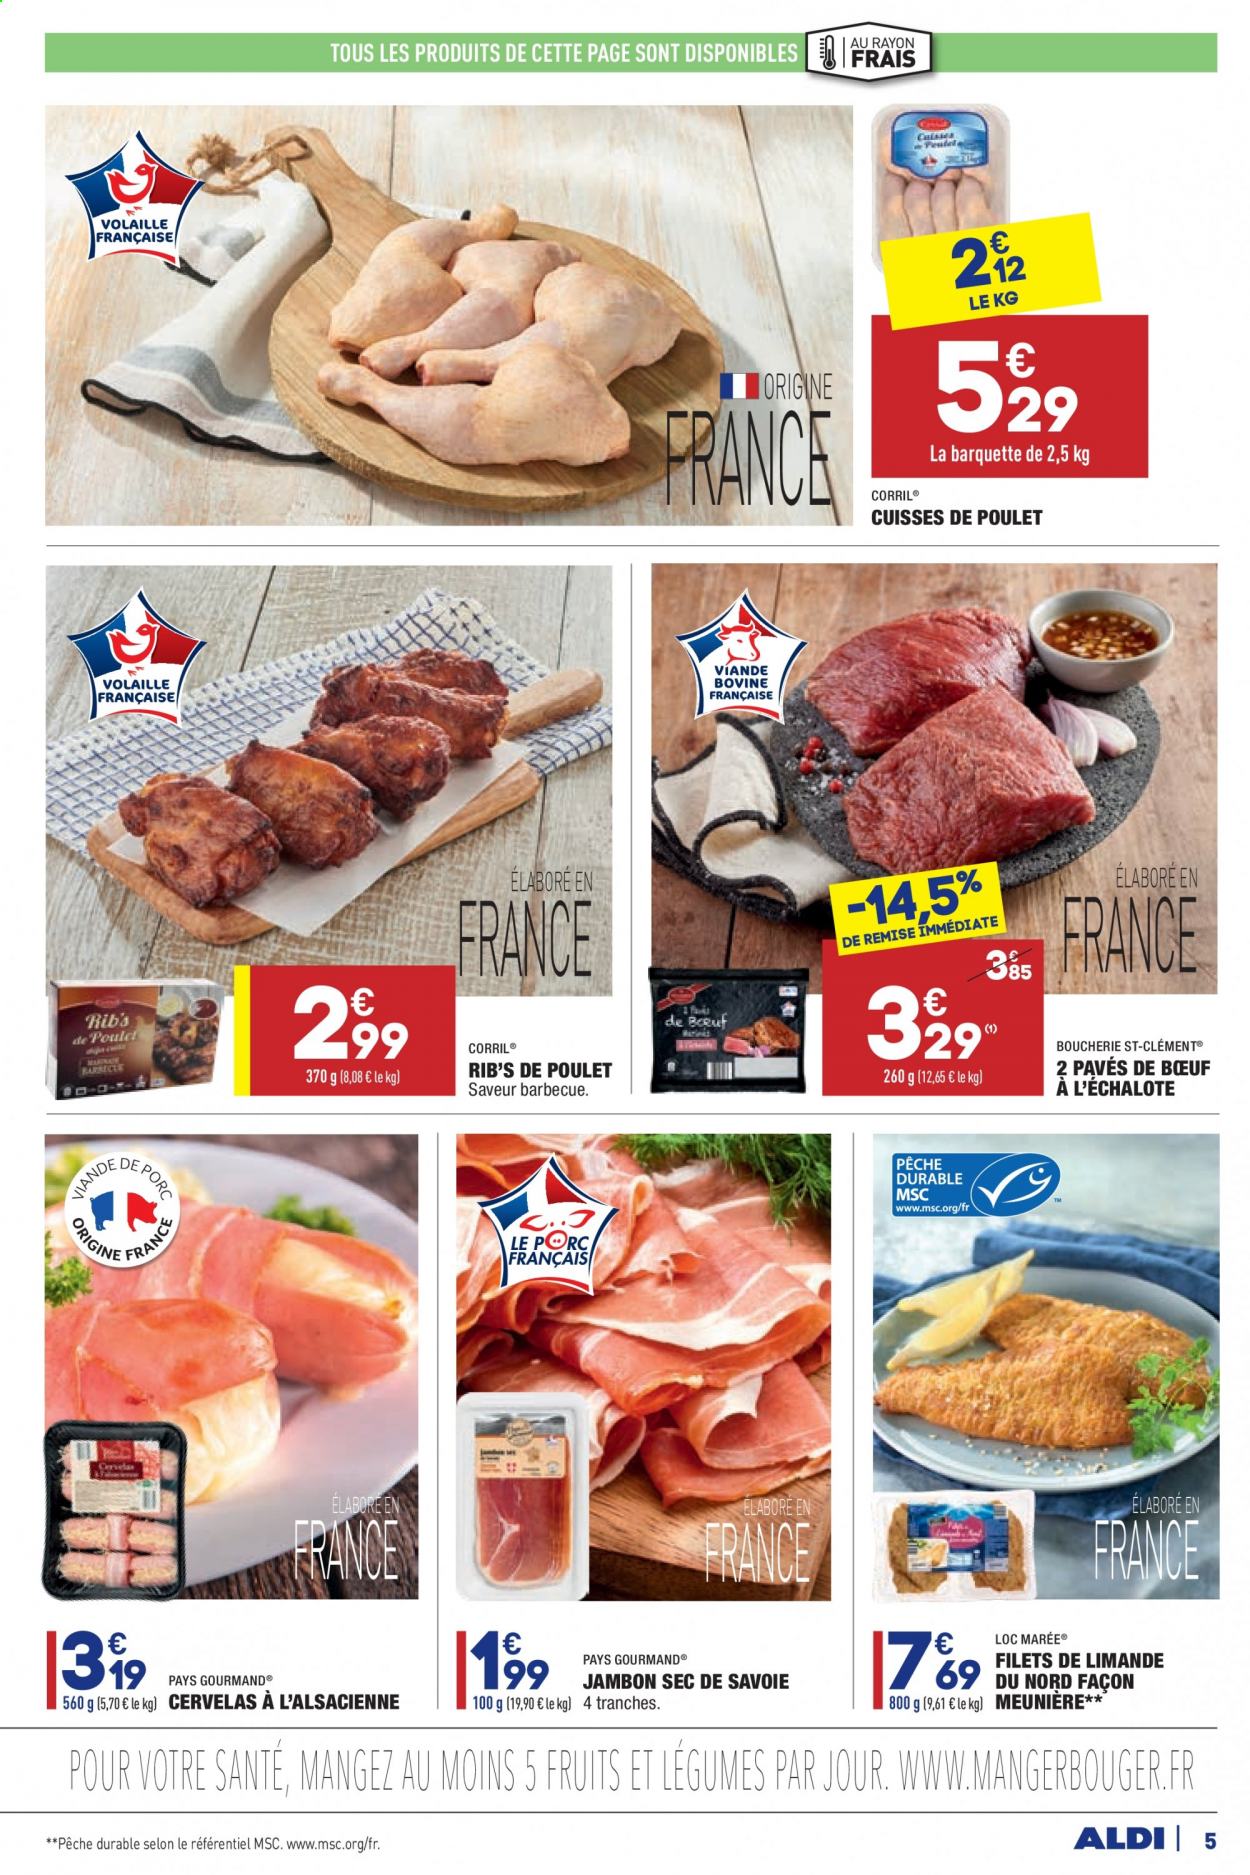 thumbnail - Catalogue ALDI - 06/04/2021 - 12/04/2021 - Produits soldés - cuisses de poulet, viande de poulet, limande, jambon, jambon sec, cervelas. Page 5.